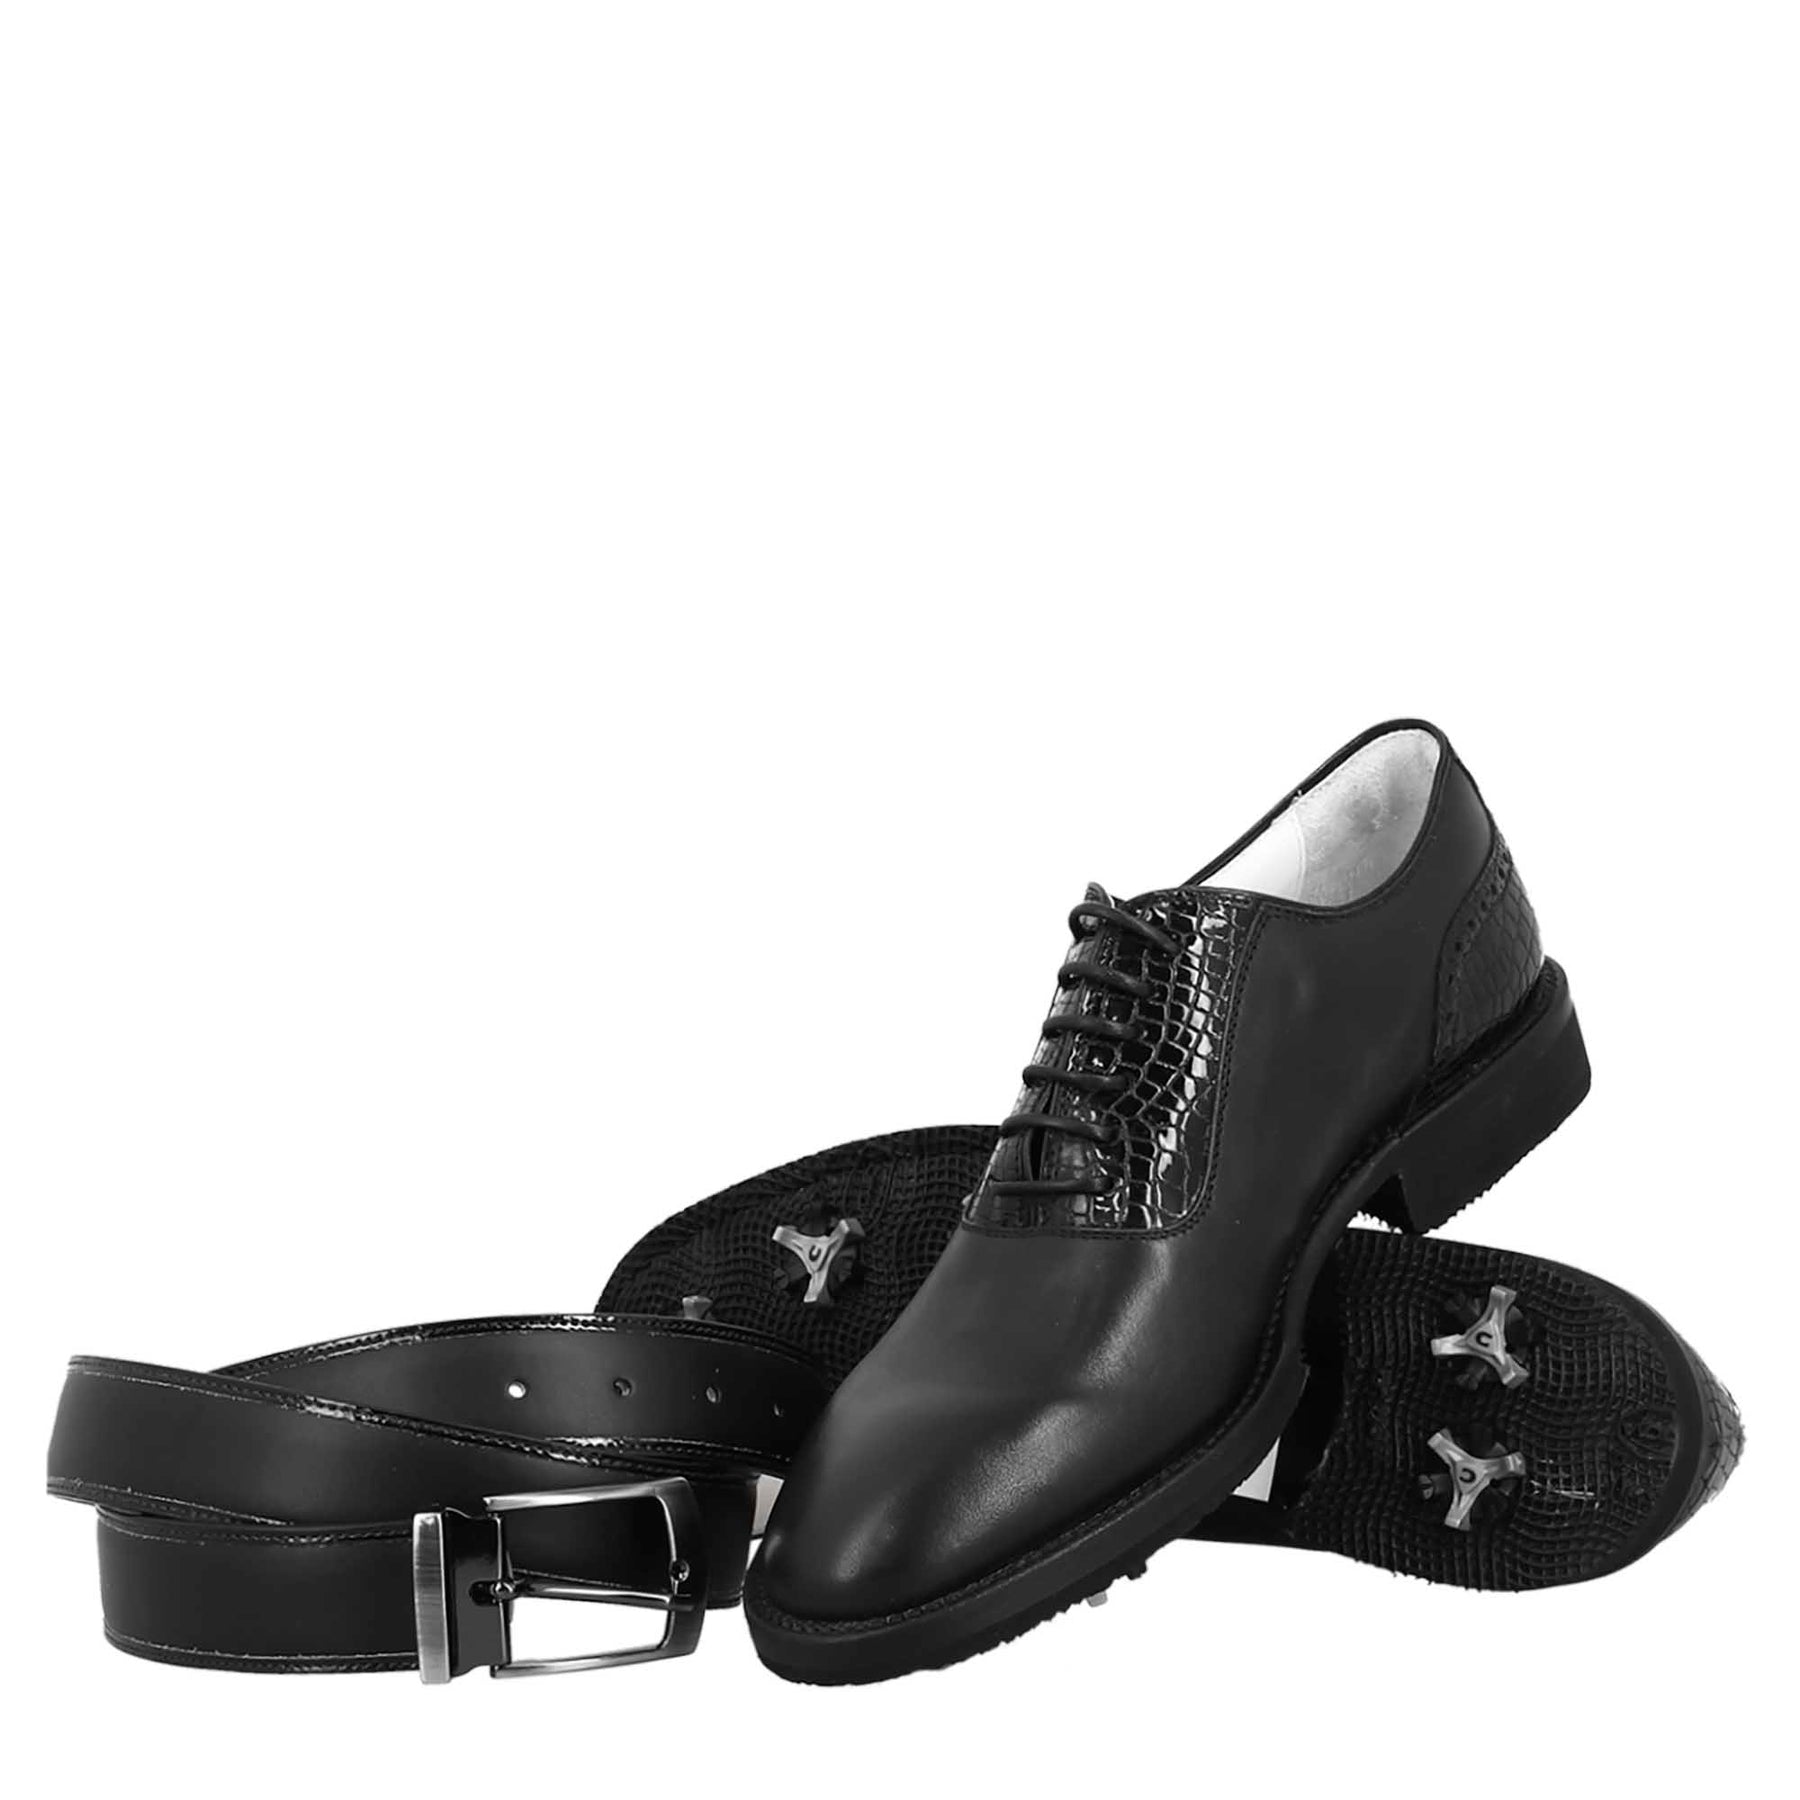 Chaussures de golf pour homme en cuir noir, avec des détails de brogue faits à la main